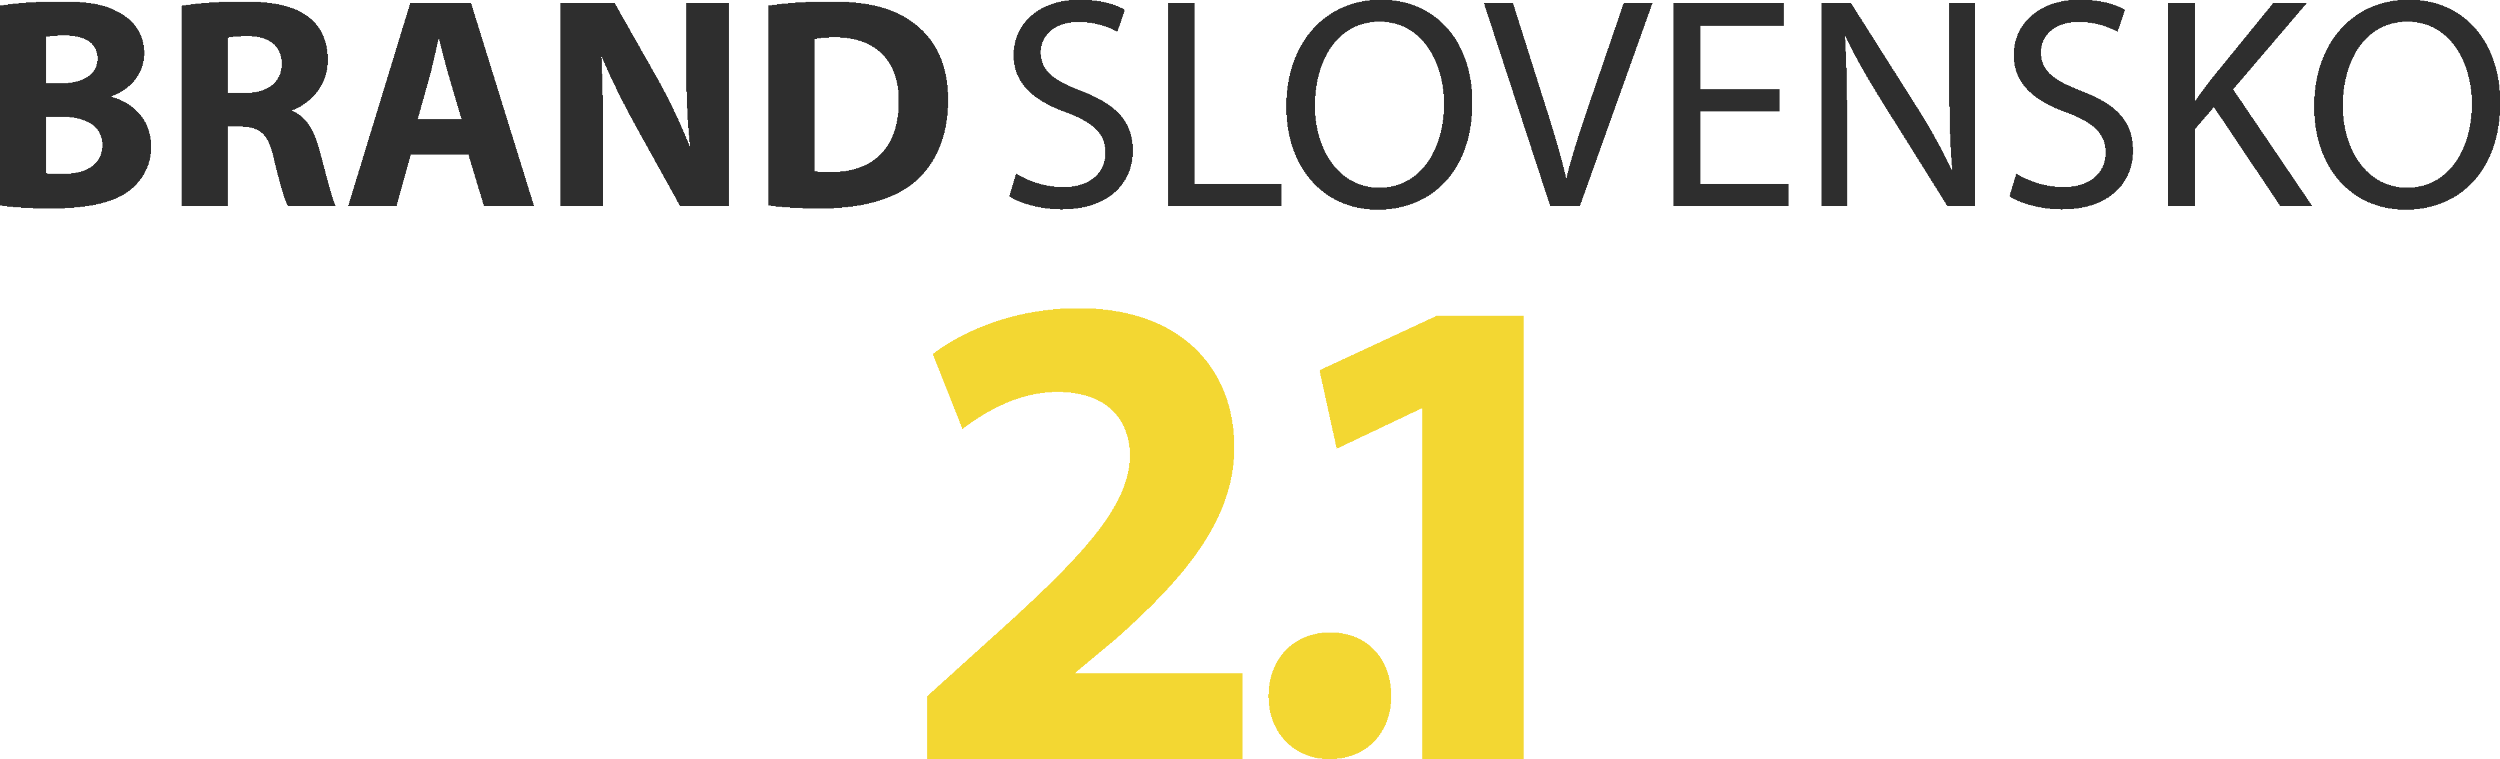 Brand Slovensko 2.1 logo